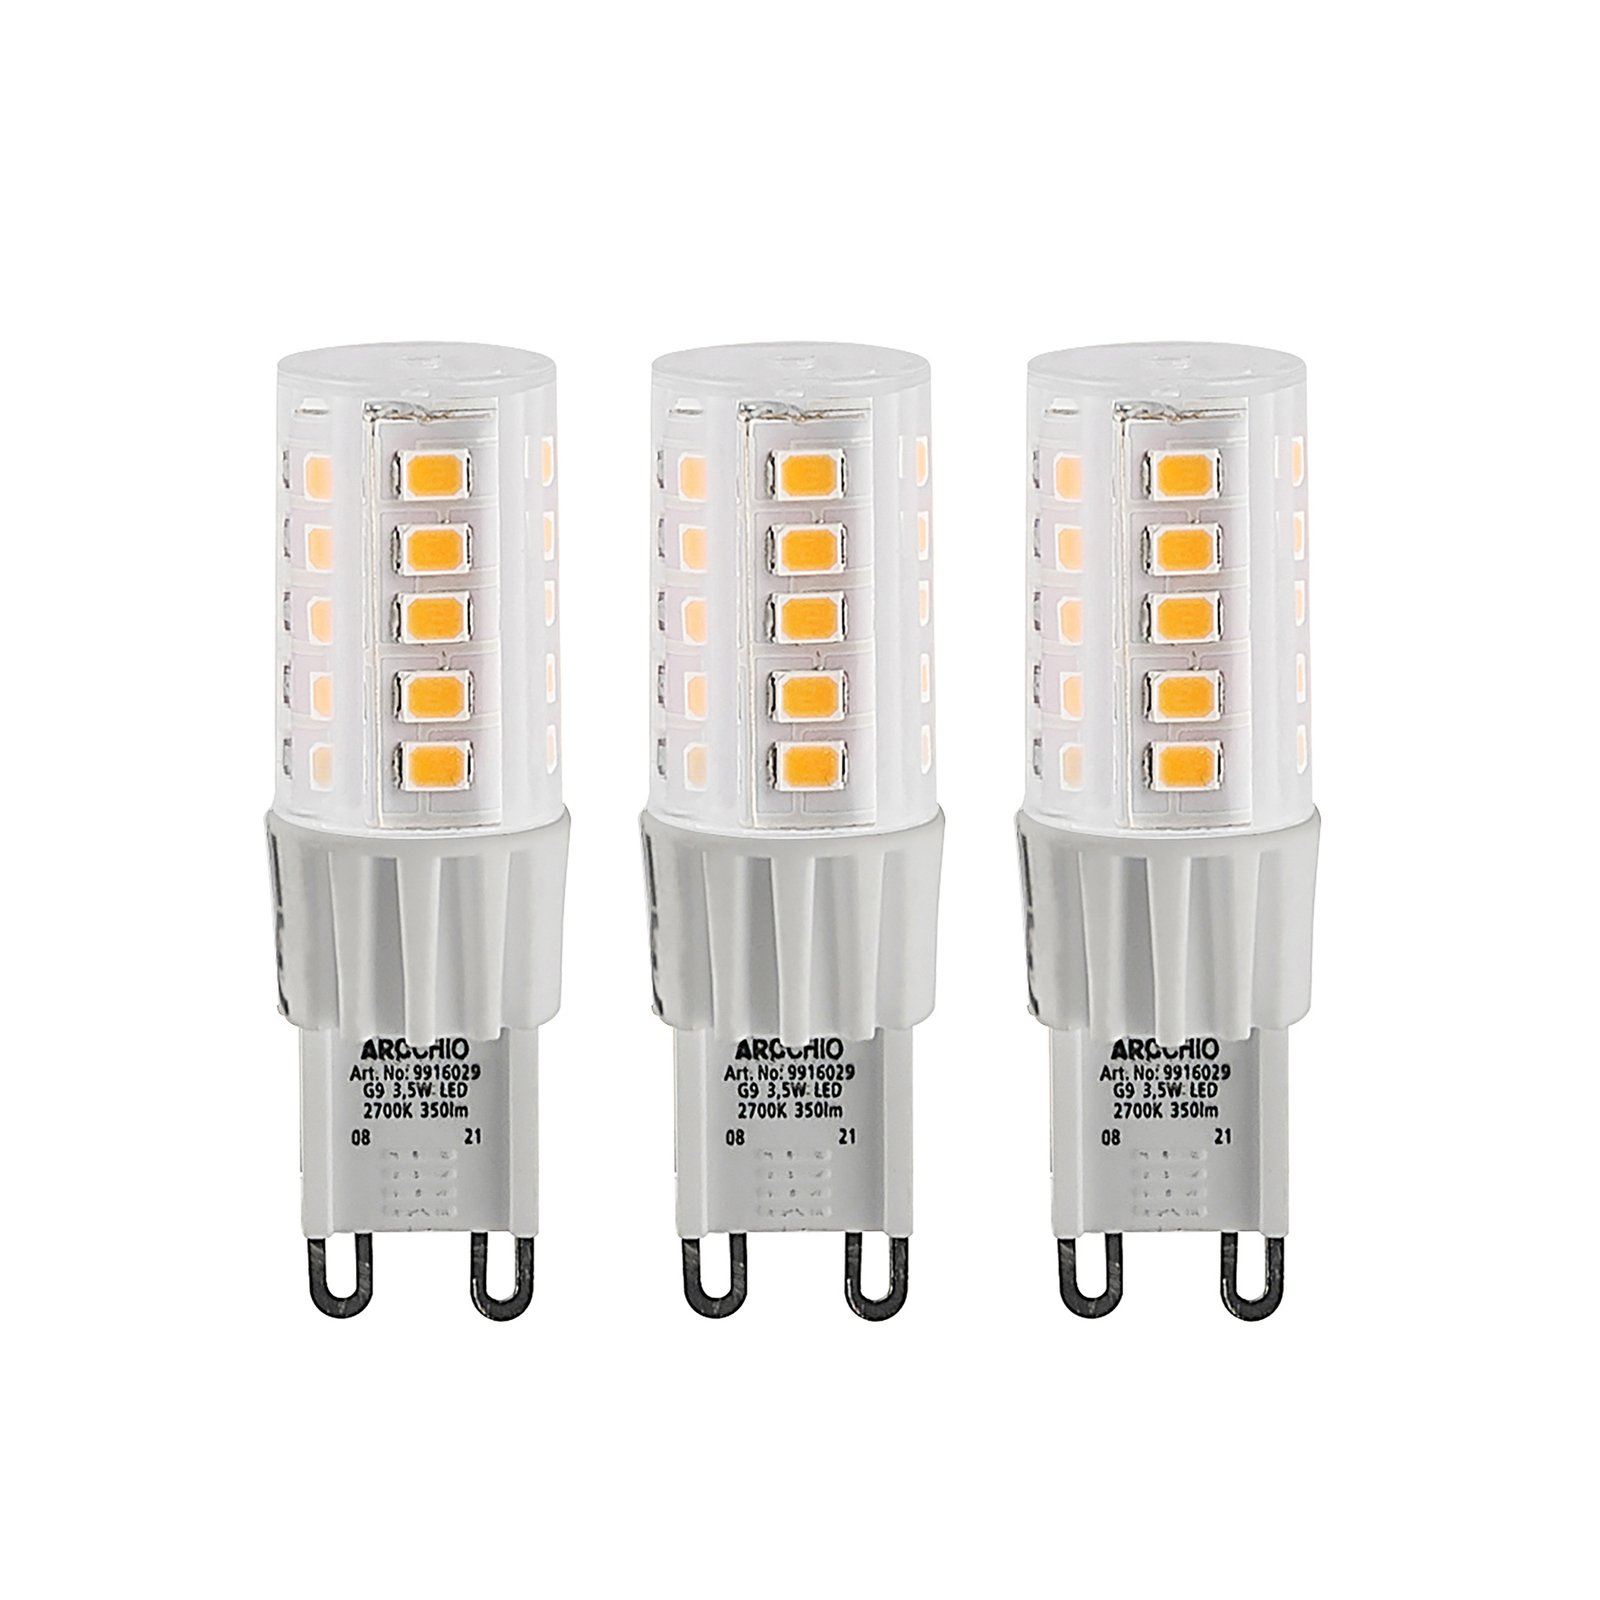 Arcchio bi-pin LED bulb G9 3.5 W 830 3-pack